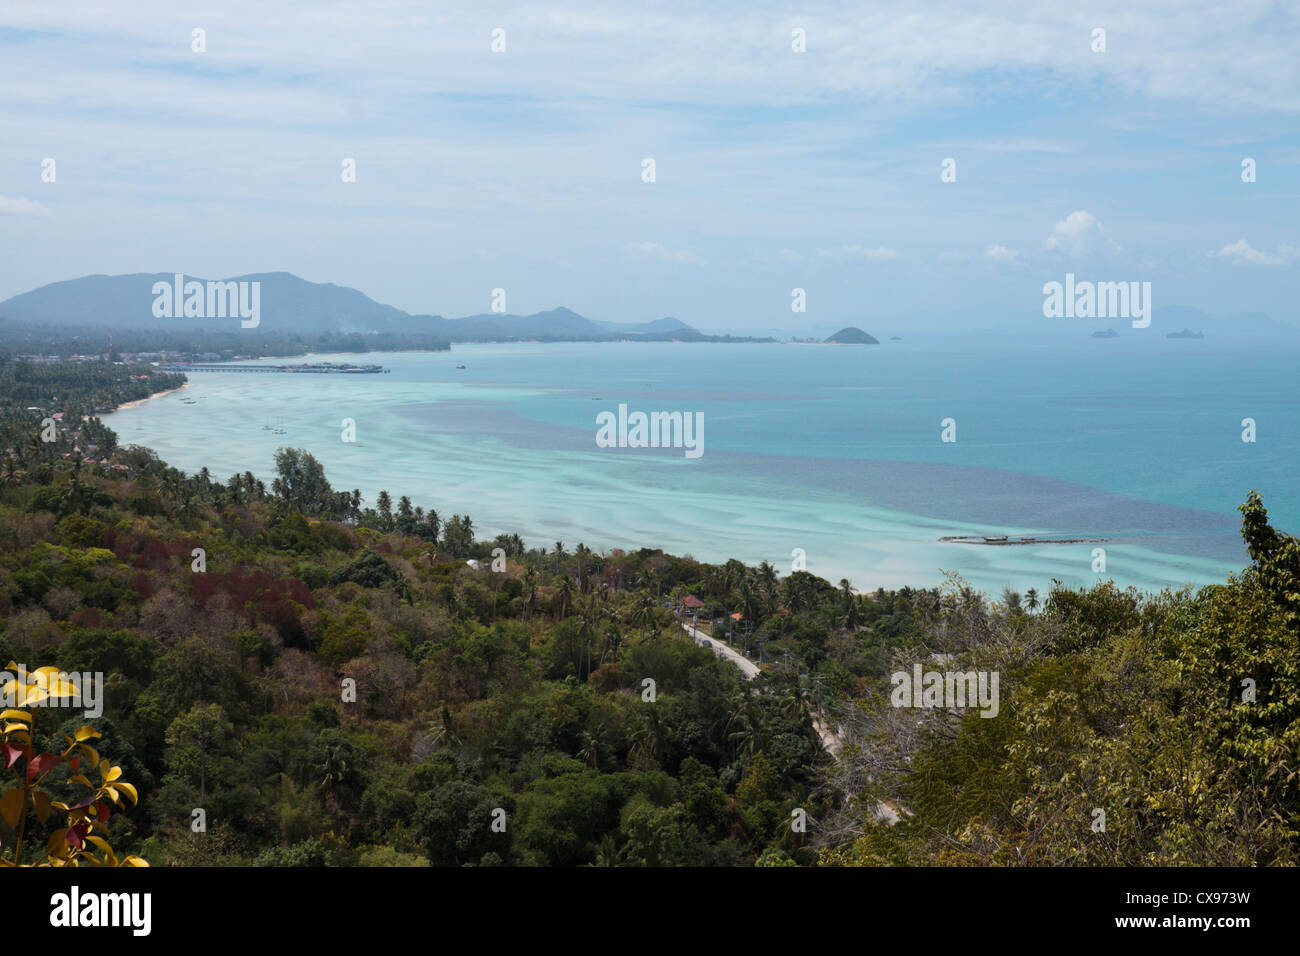 Les eaux bleu turquoise, plage de sable et des terres forestières sur l'île de Ko Samui, Thaïlande Banque D'Images